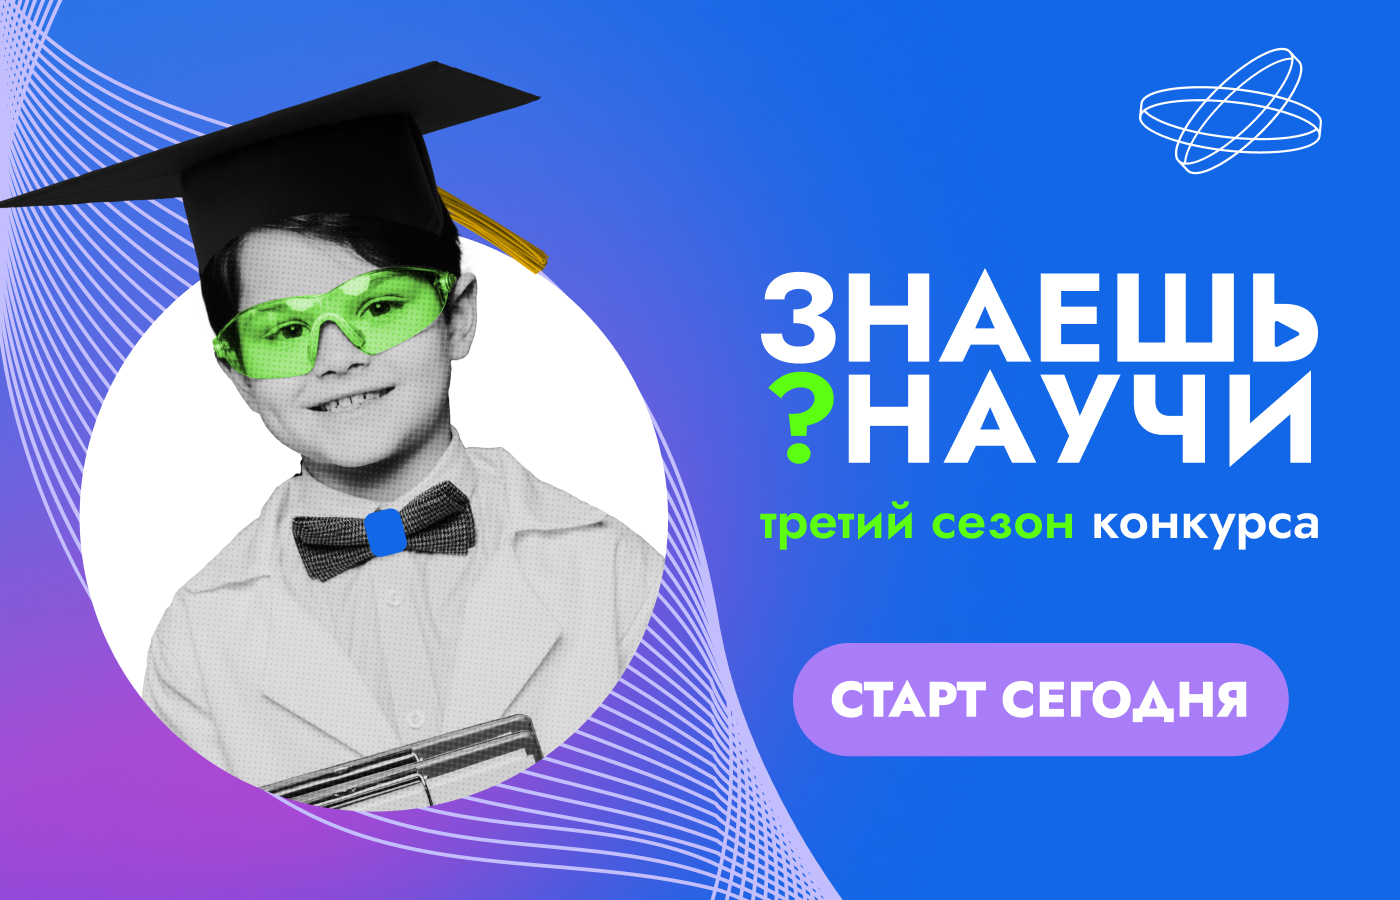 В России стартует третий сезон конкурса детского научно-популярного видео «Знаешь?Научи!»